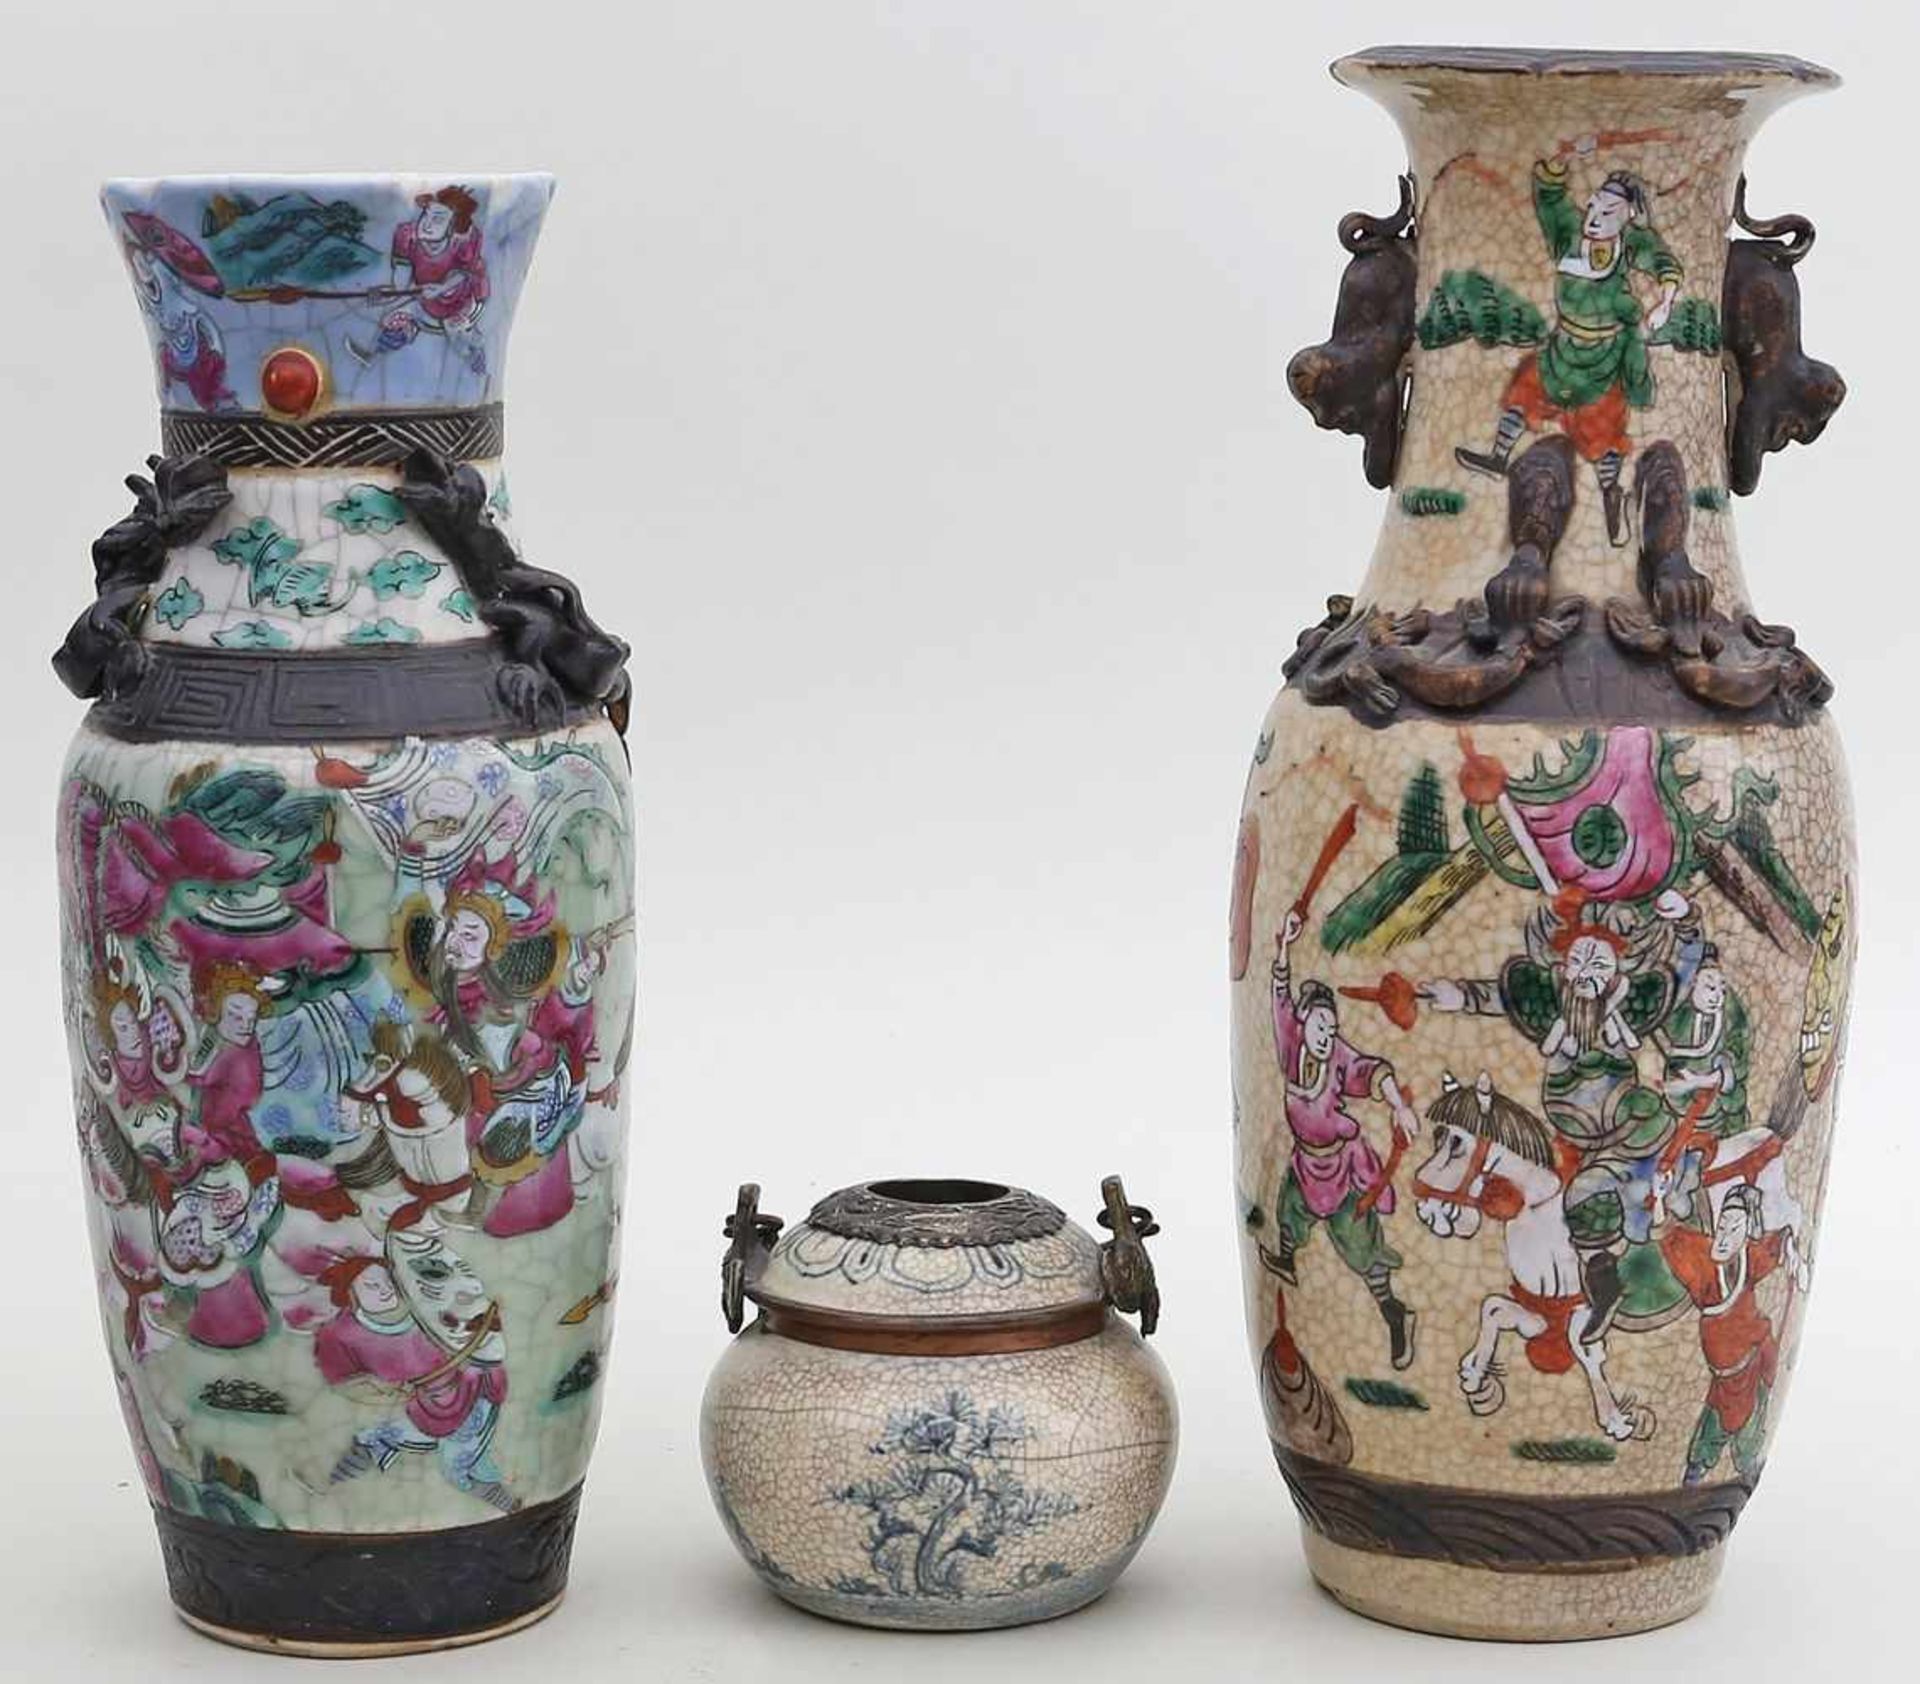 2 Vasen und Henkelgefäß.Porzellan mit gesprüngelter Glasur. Verschiedene Formen und Bemalungen.